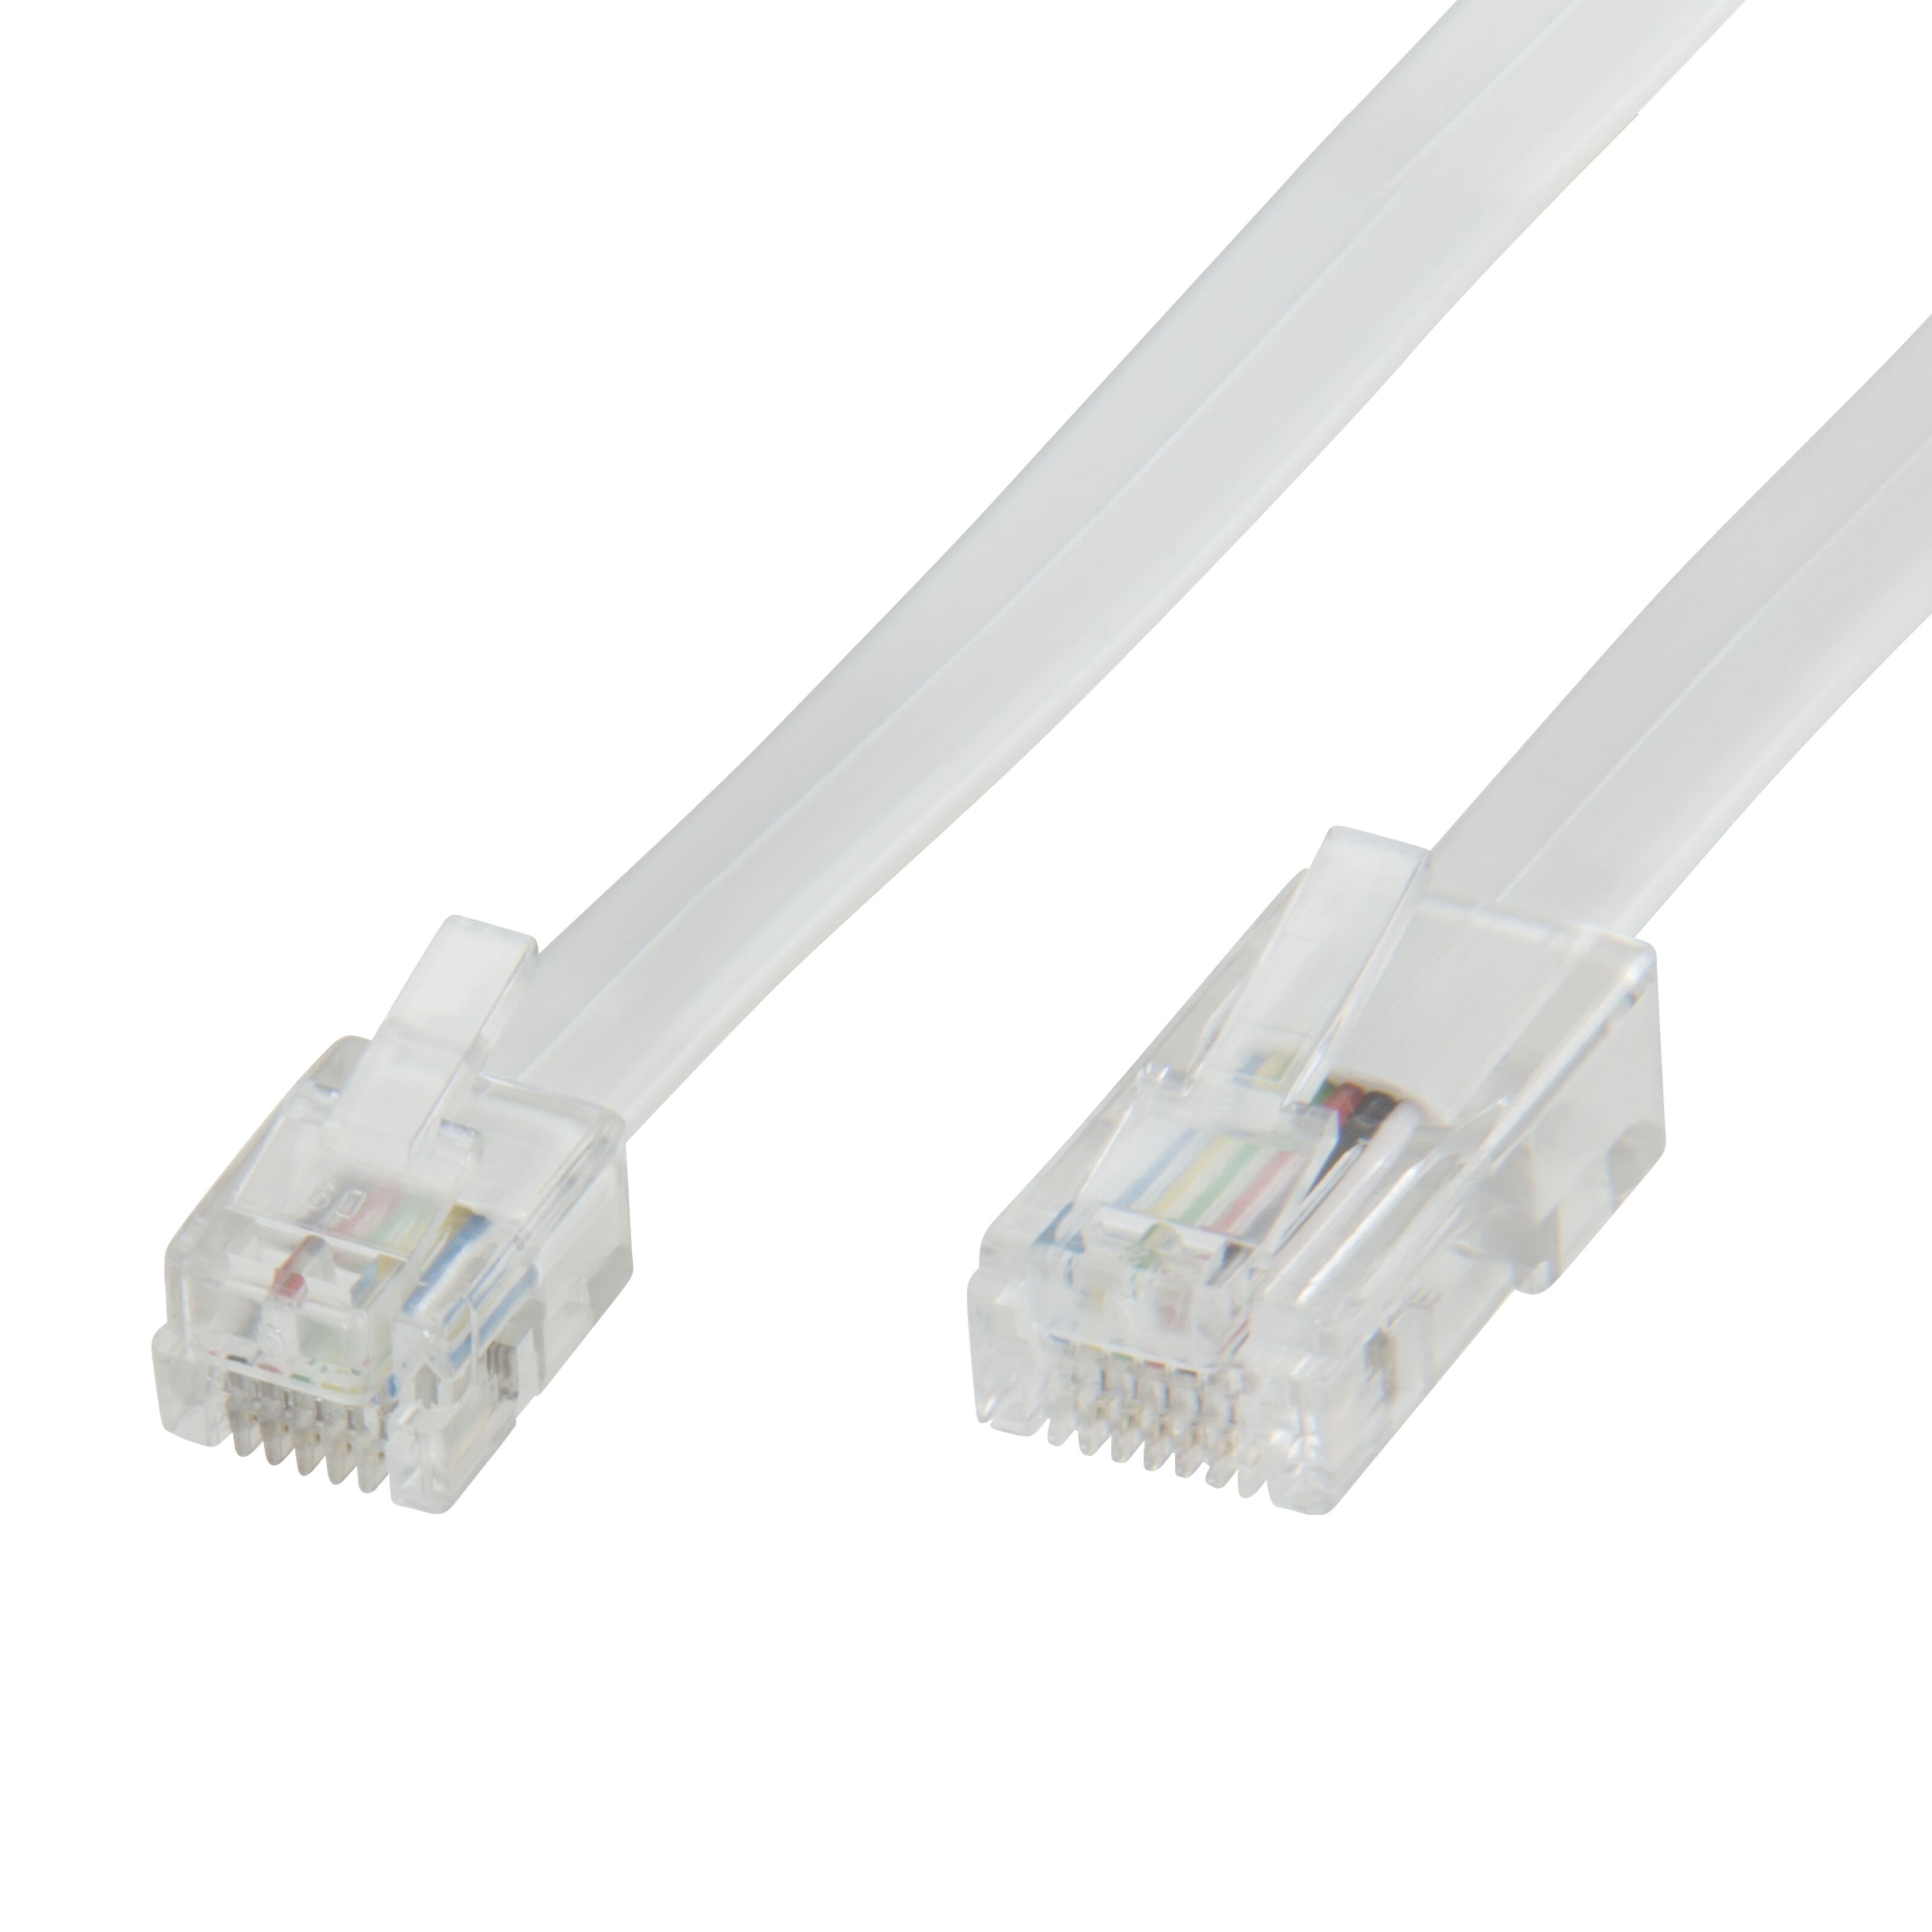 Valueline tel-0011b Telefonkabel – Kabel für Festnetz RJ-11, RJ-11 